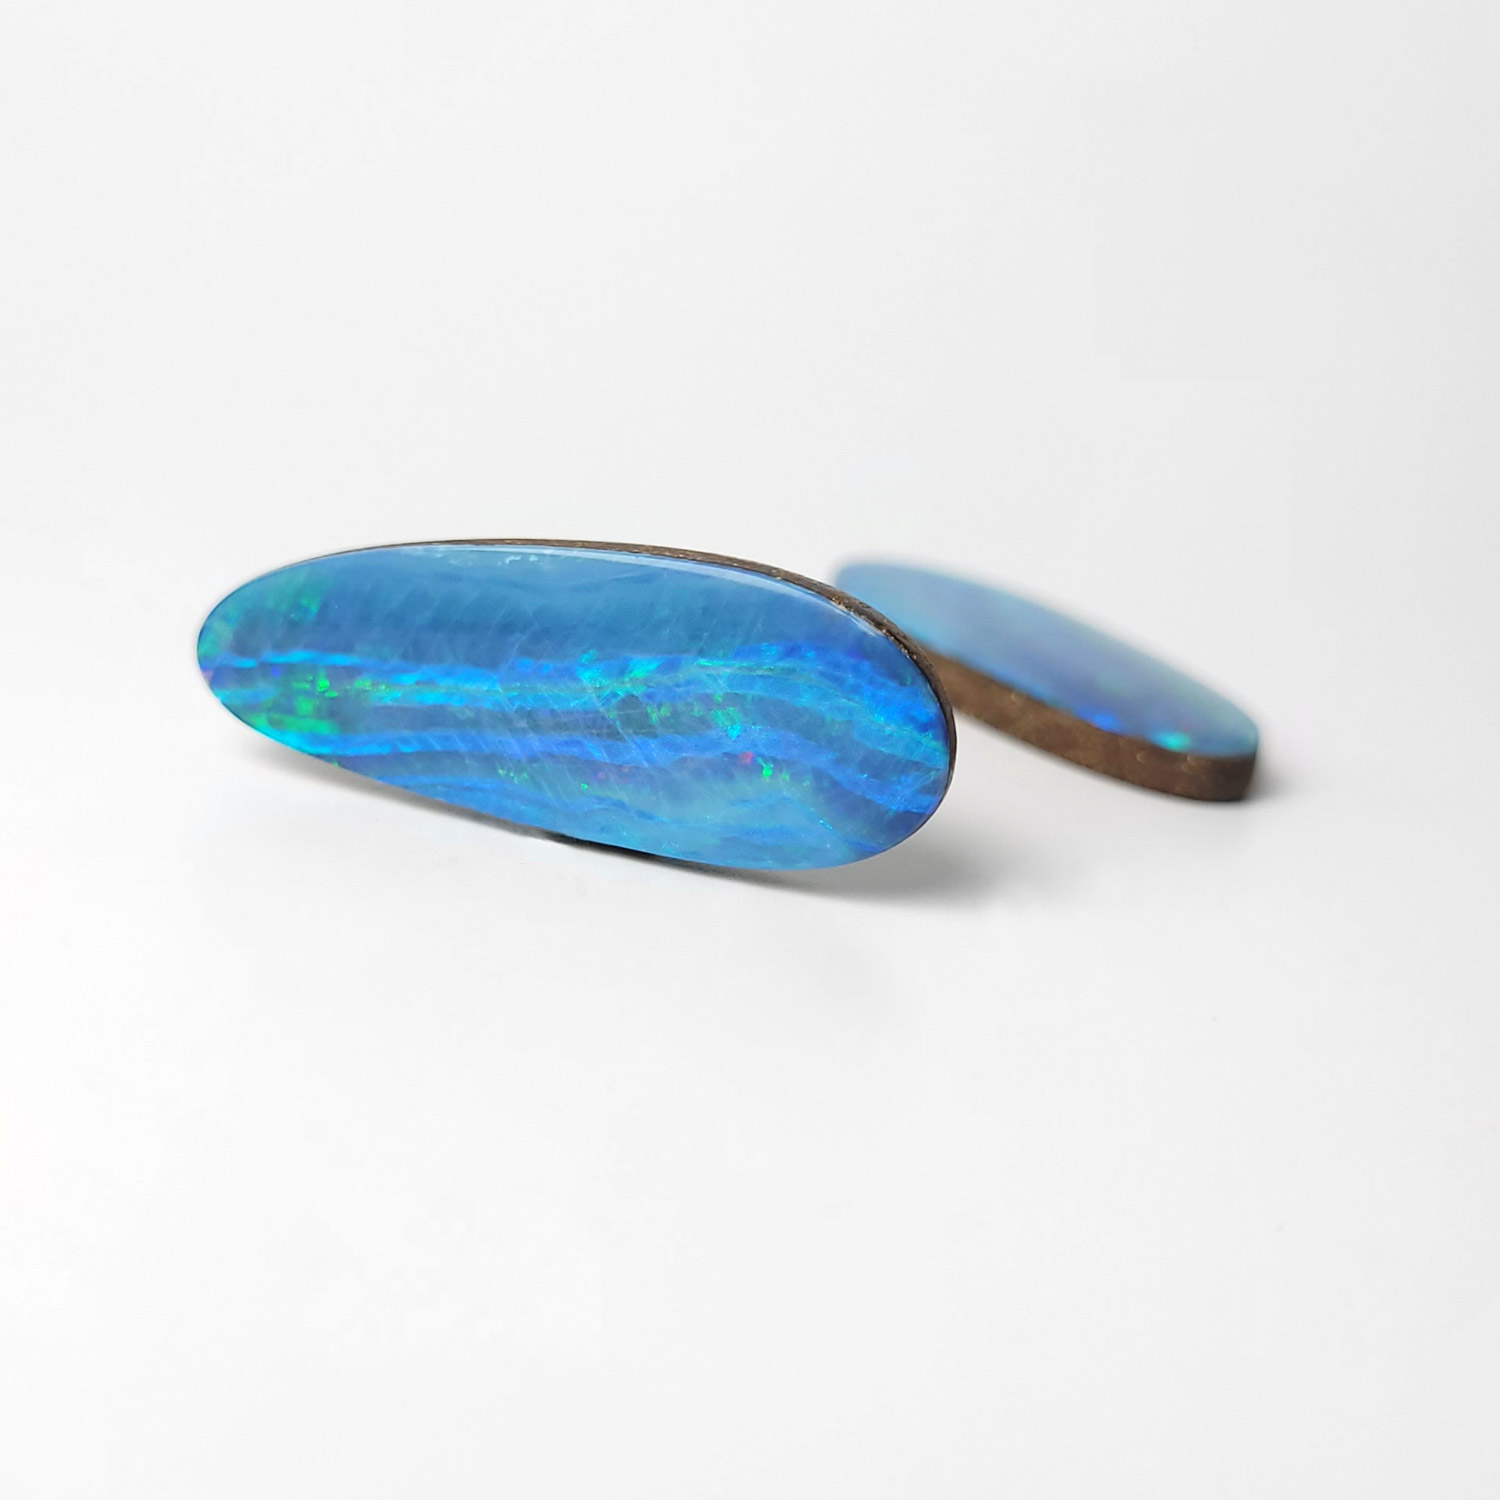 Dieser Edelstein ist ein opal Dublette cabochon